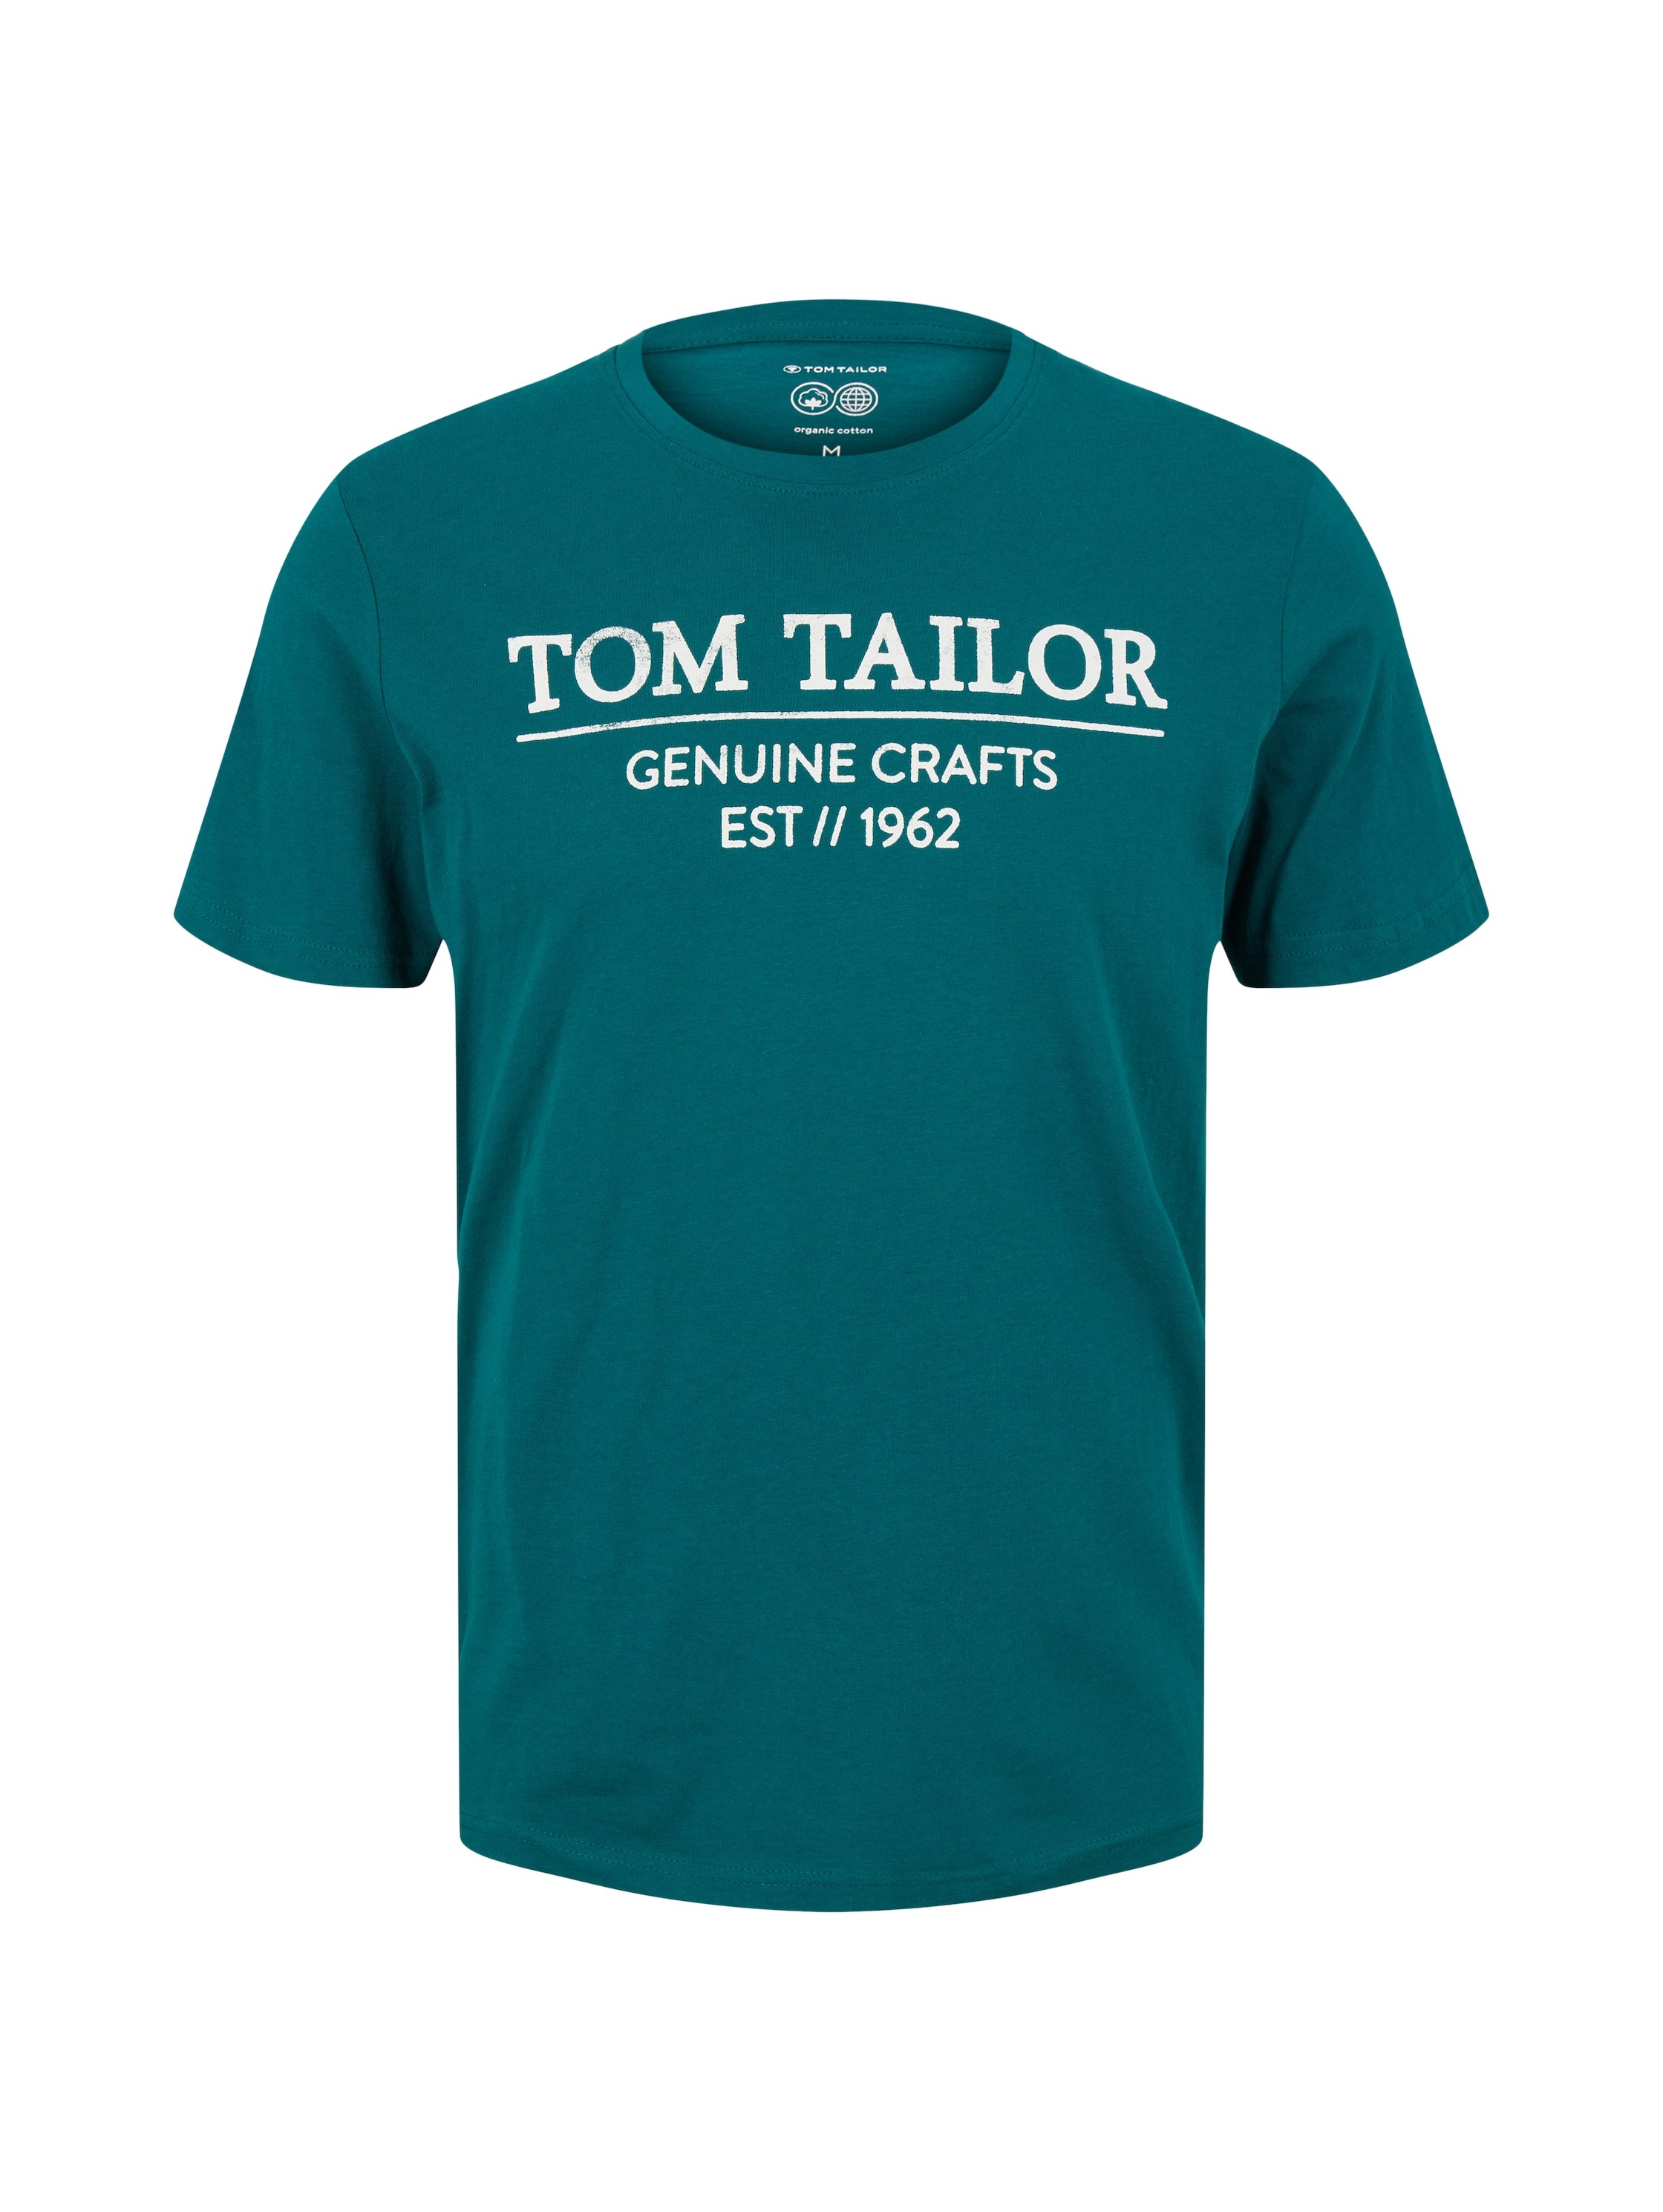 Tom Tailor Muška majica 10102122910 30062